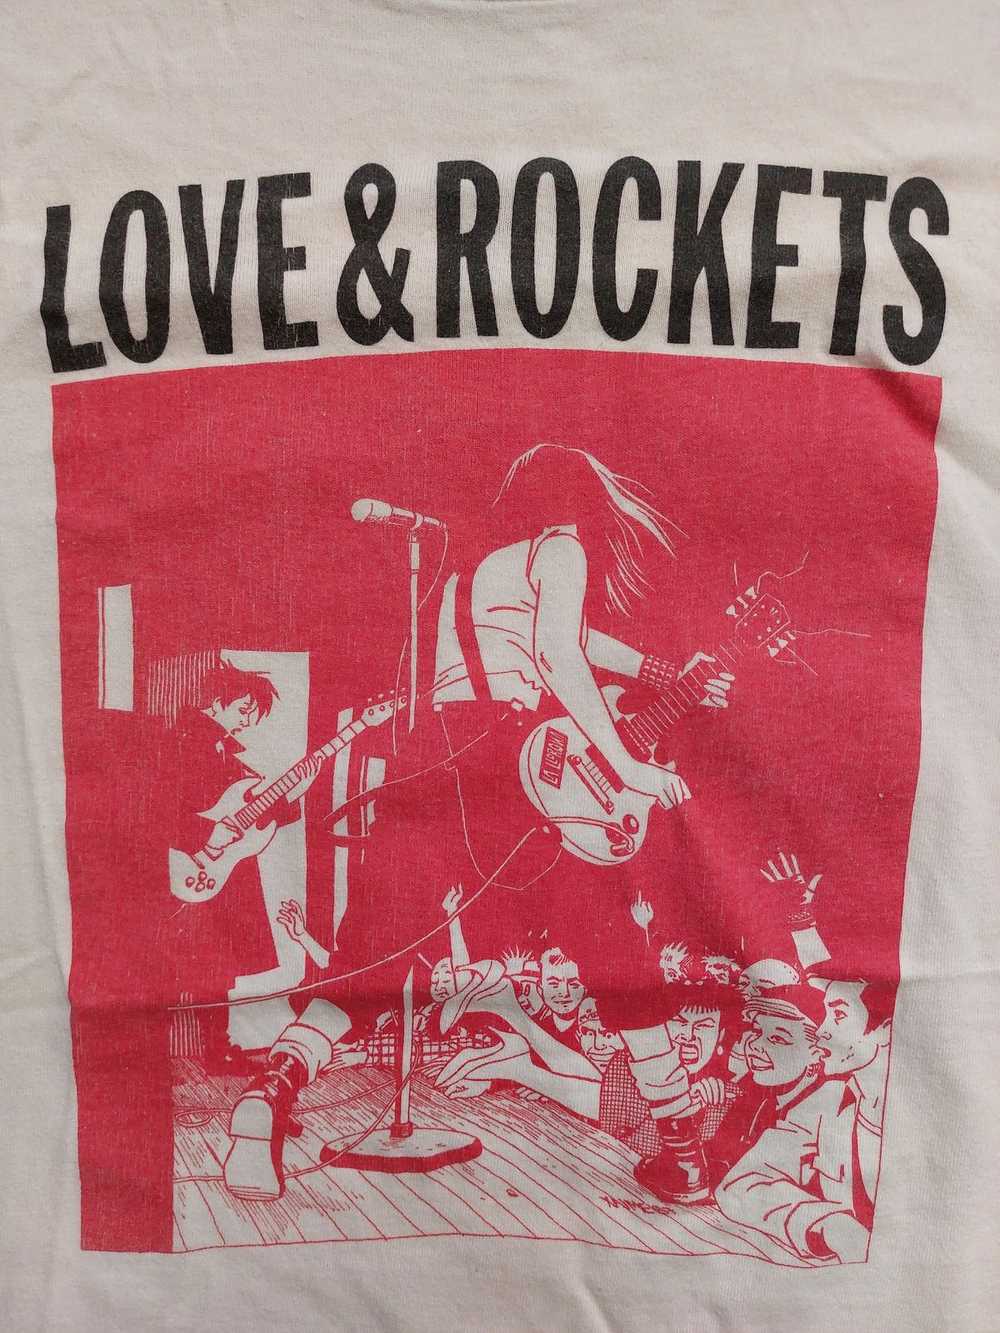 Vintage Vintage Love and Rockets t shirt - image 4